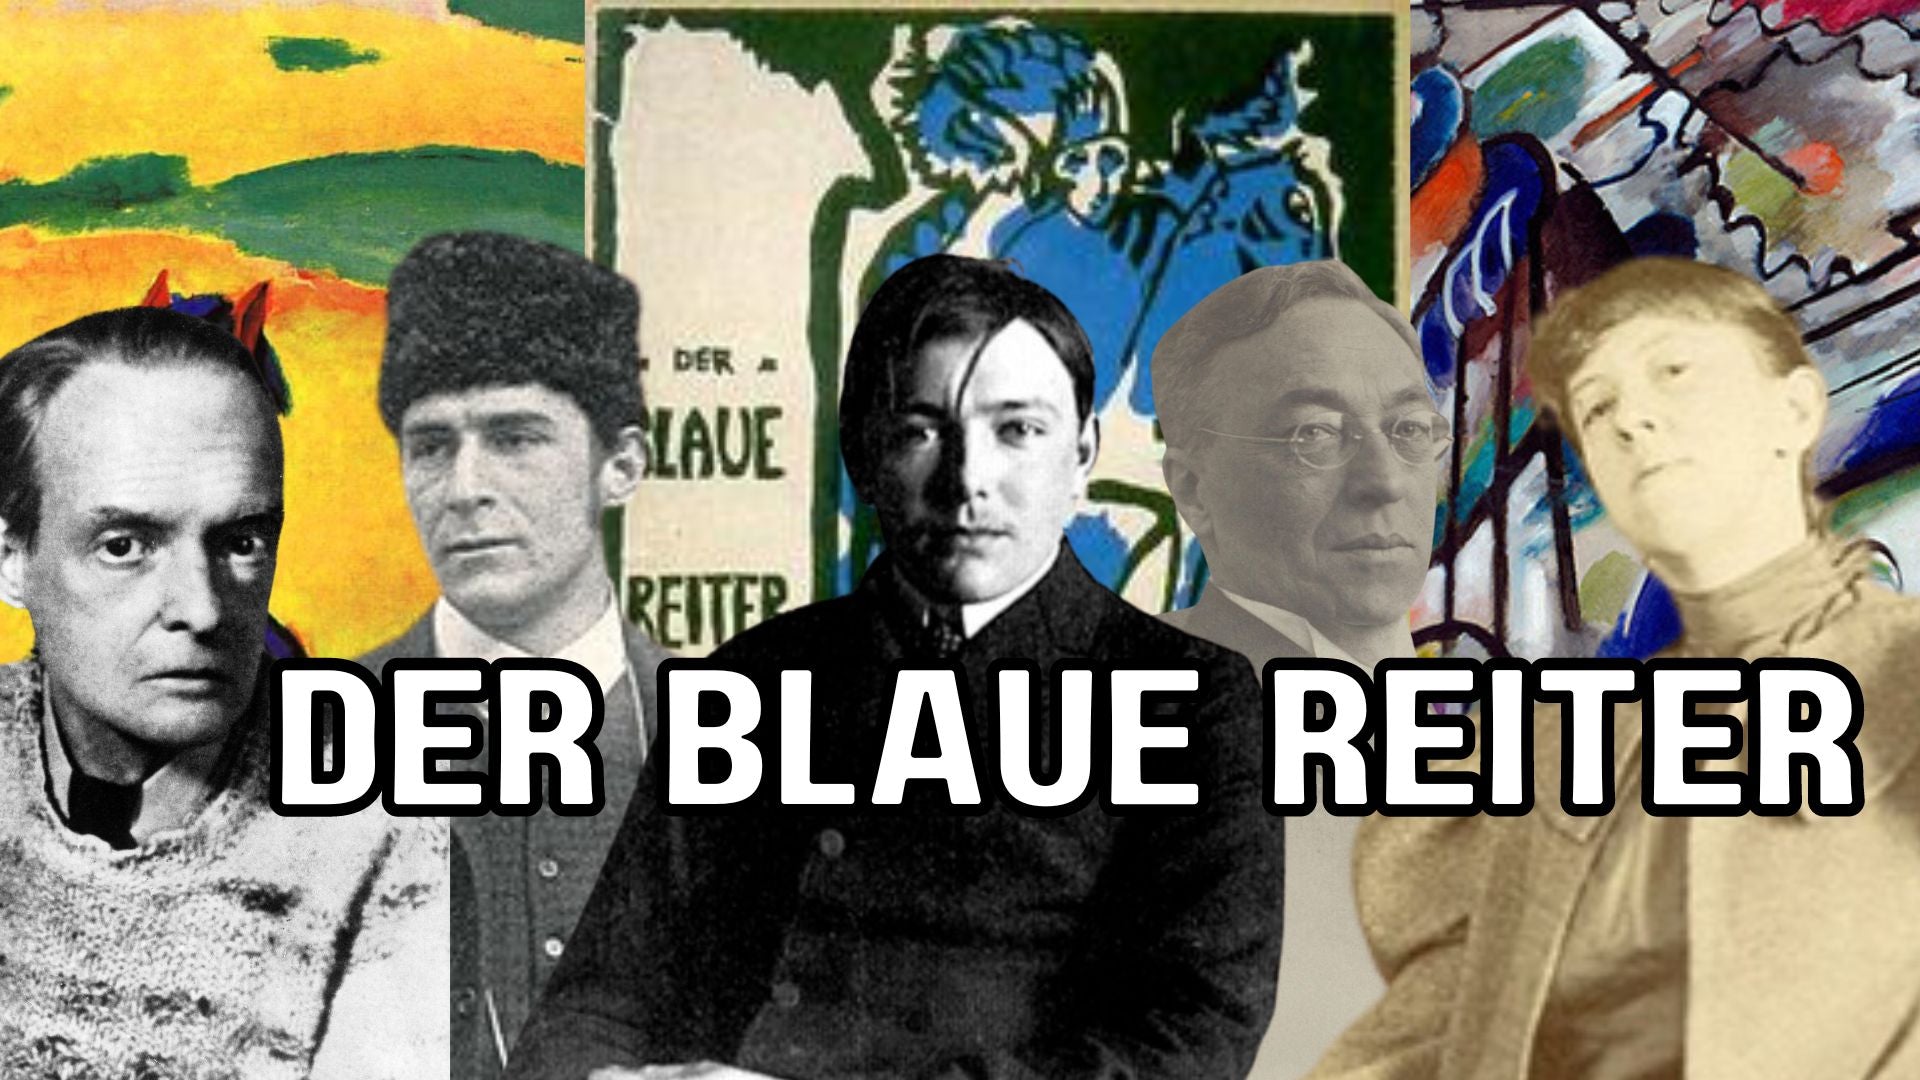 Der Blaue Reiter: A Pioneering Art Movement